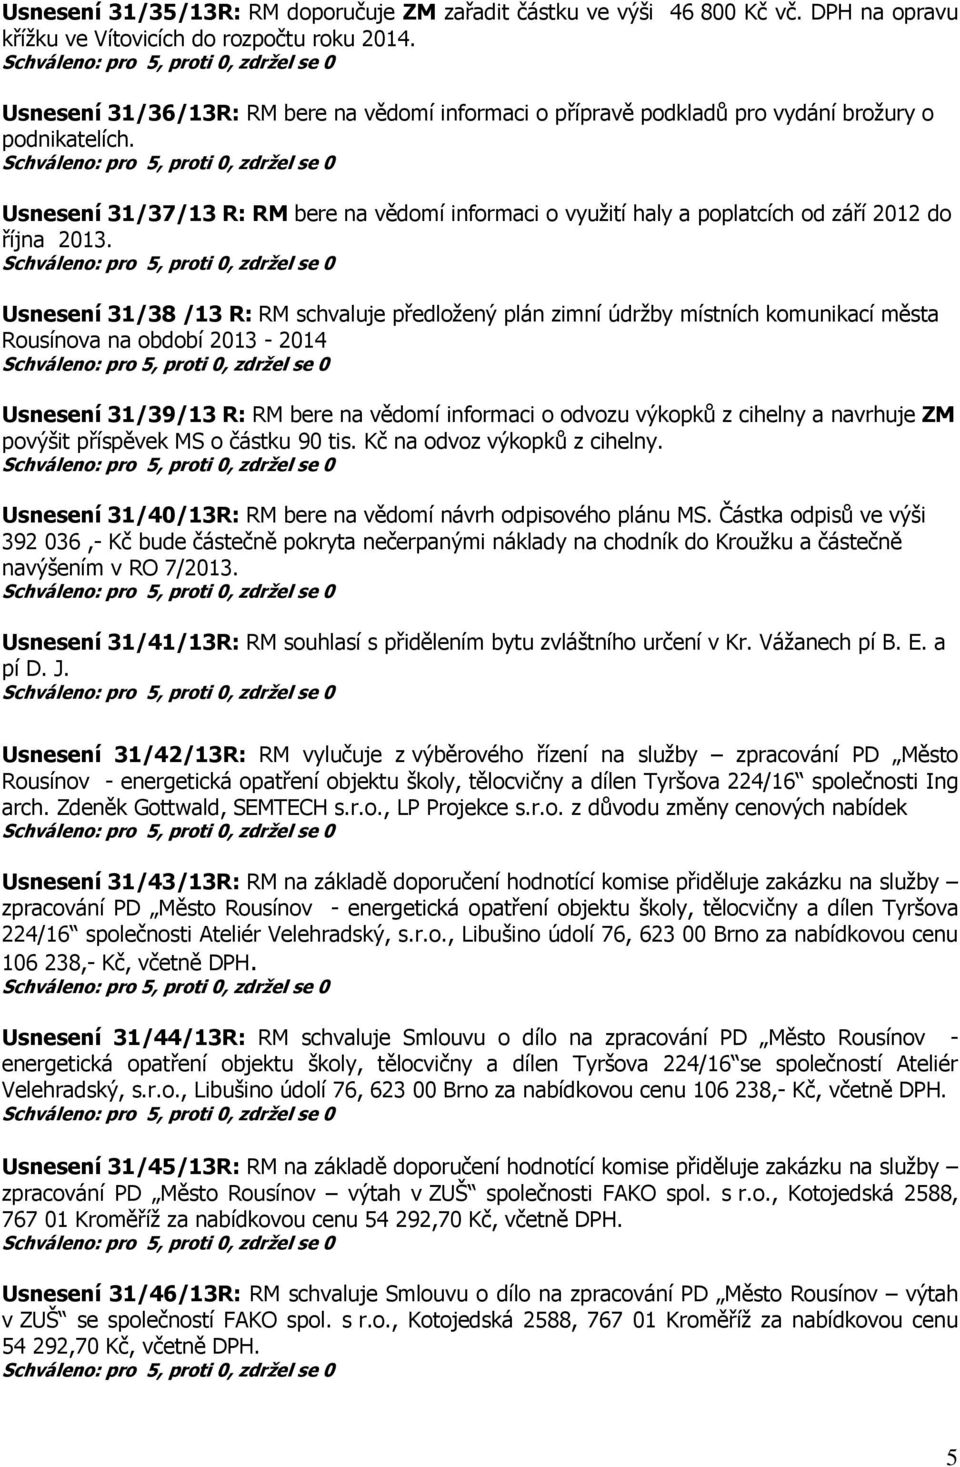 Usnesení 31/37/13 R: RM bere na vědomí informaci o využití haly a poplatcích od září 2012 do října 2013.